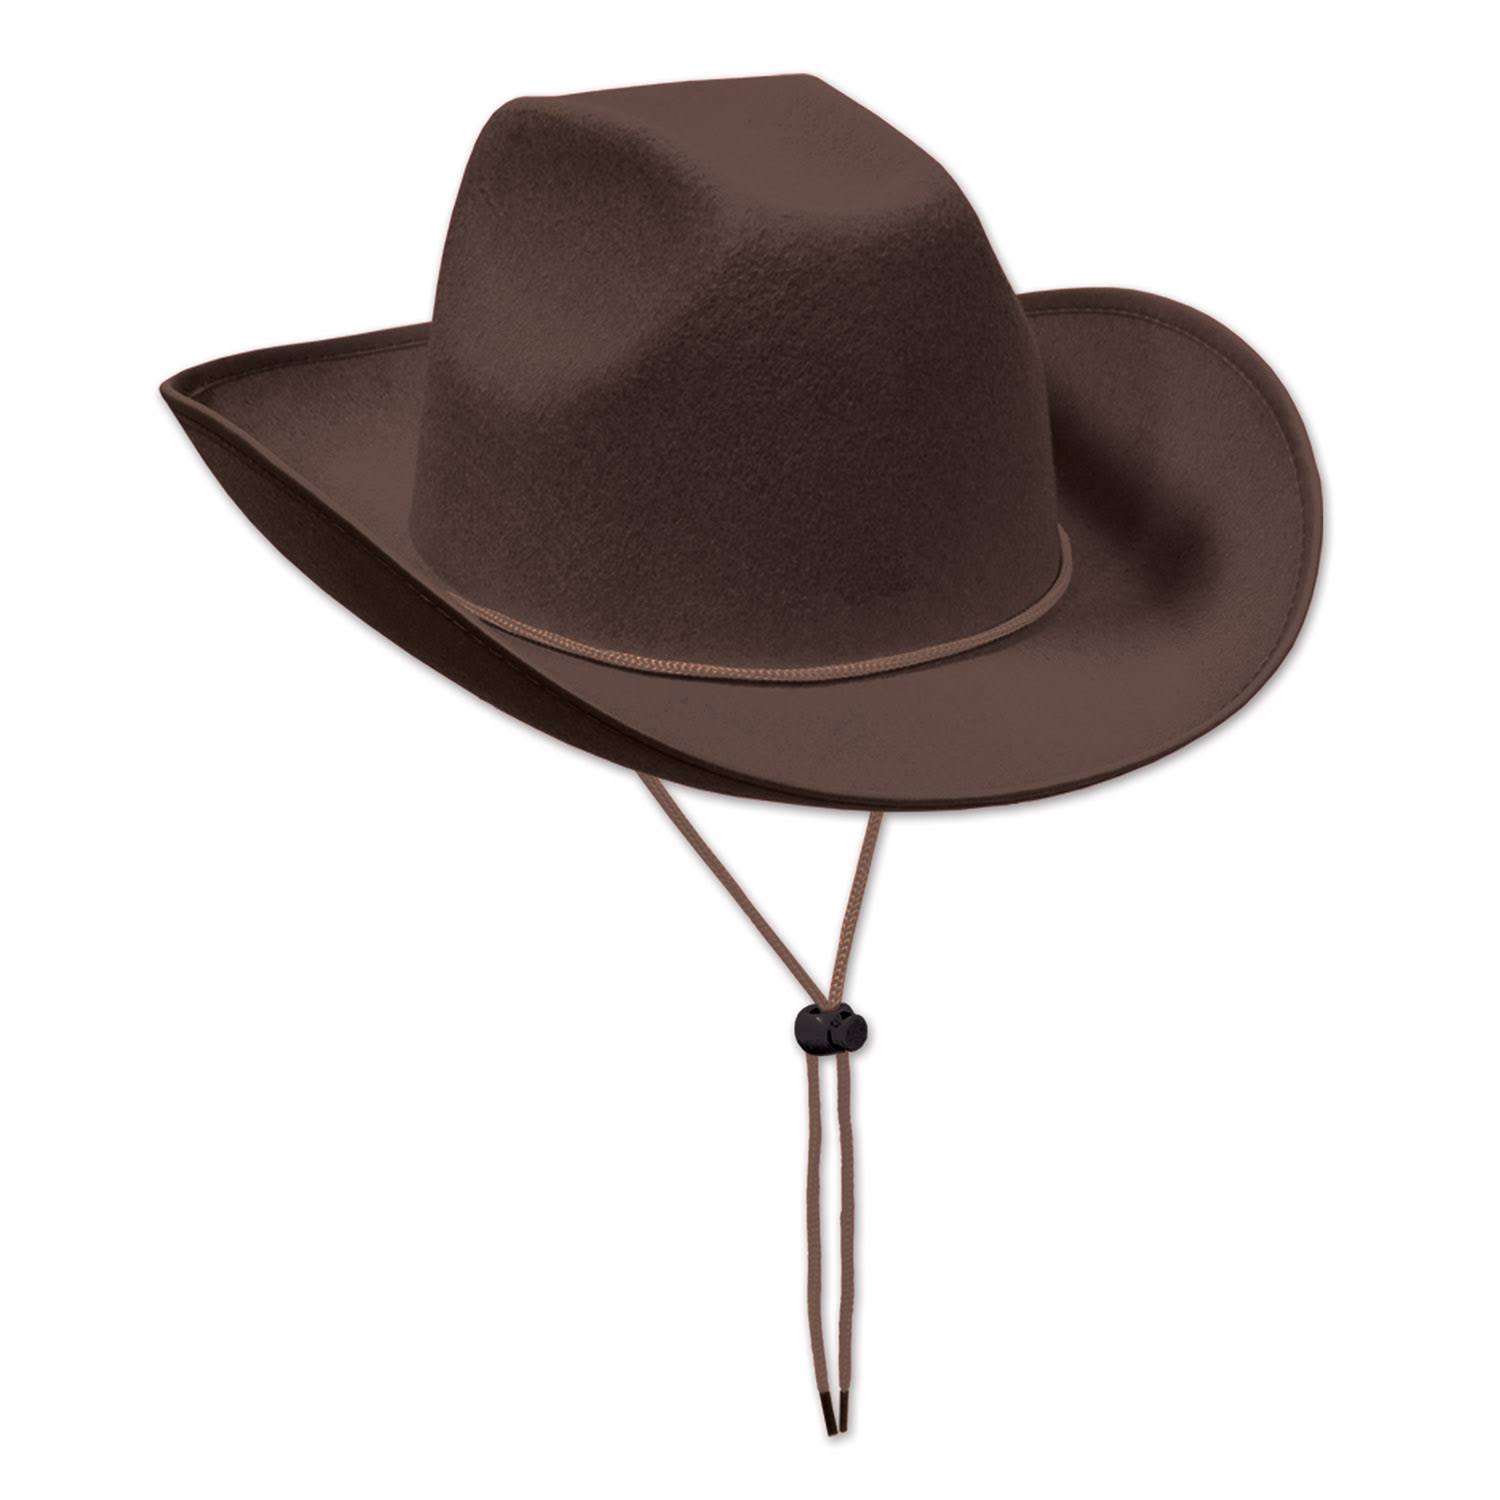 DDI 1907017 Felt Cowboy Hat - Brown